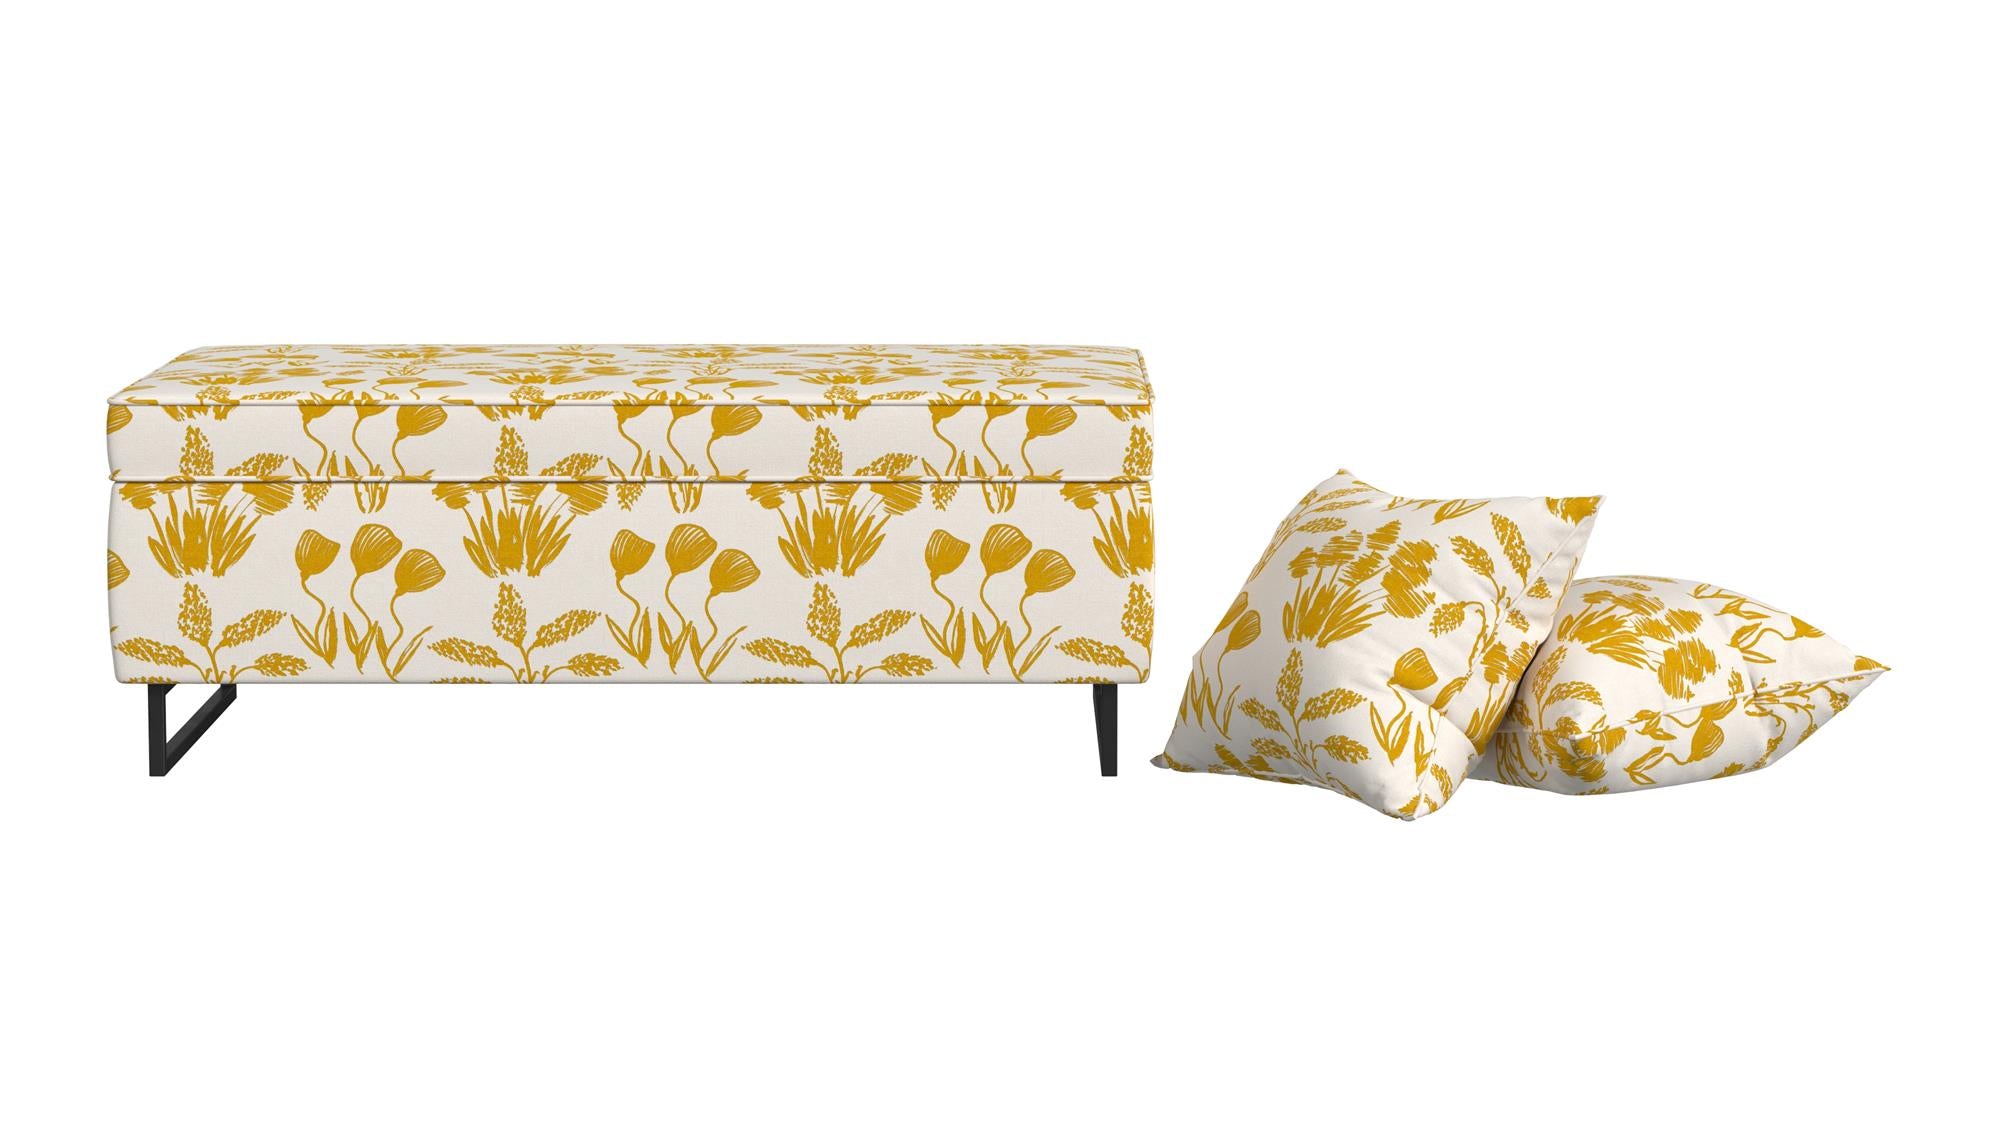  Bleeker Rectangular Storage Ottoman and 2 Pillows Set - Golden Hour Flower Garden - N/A